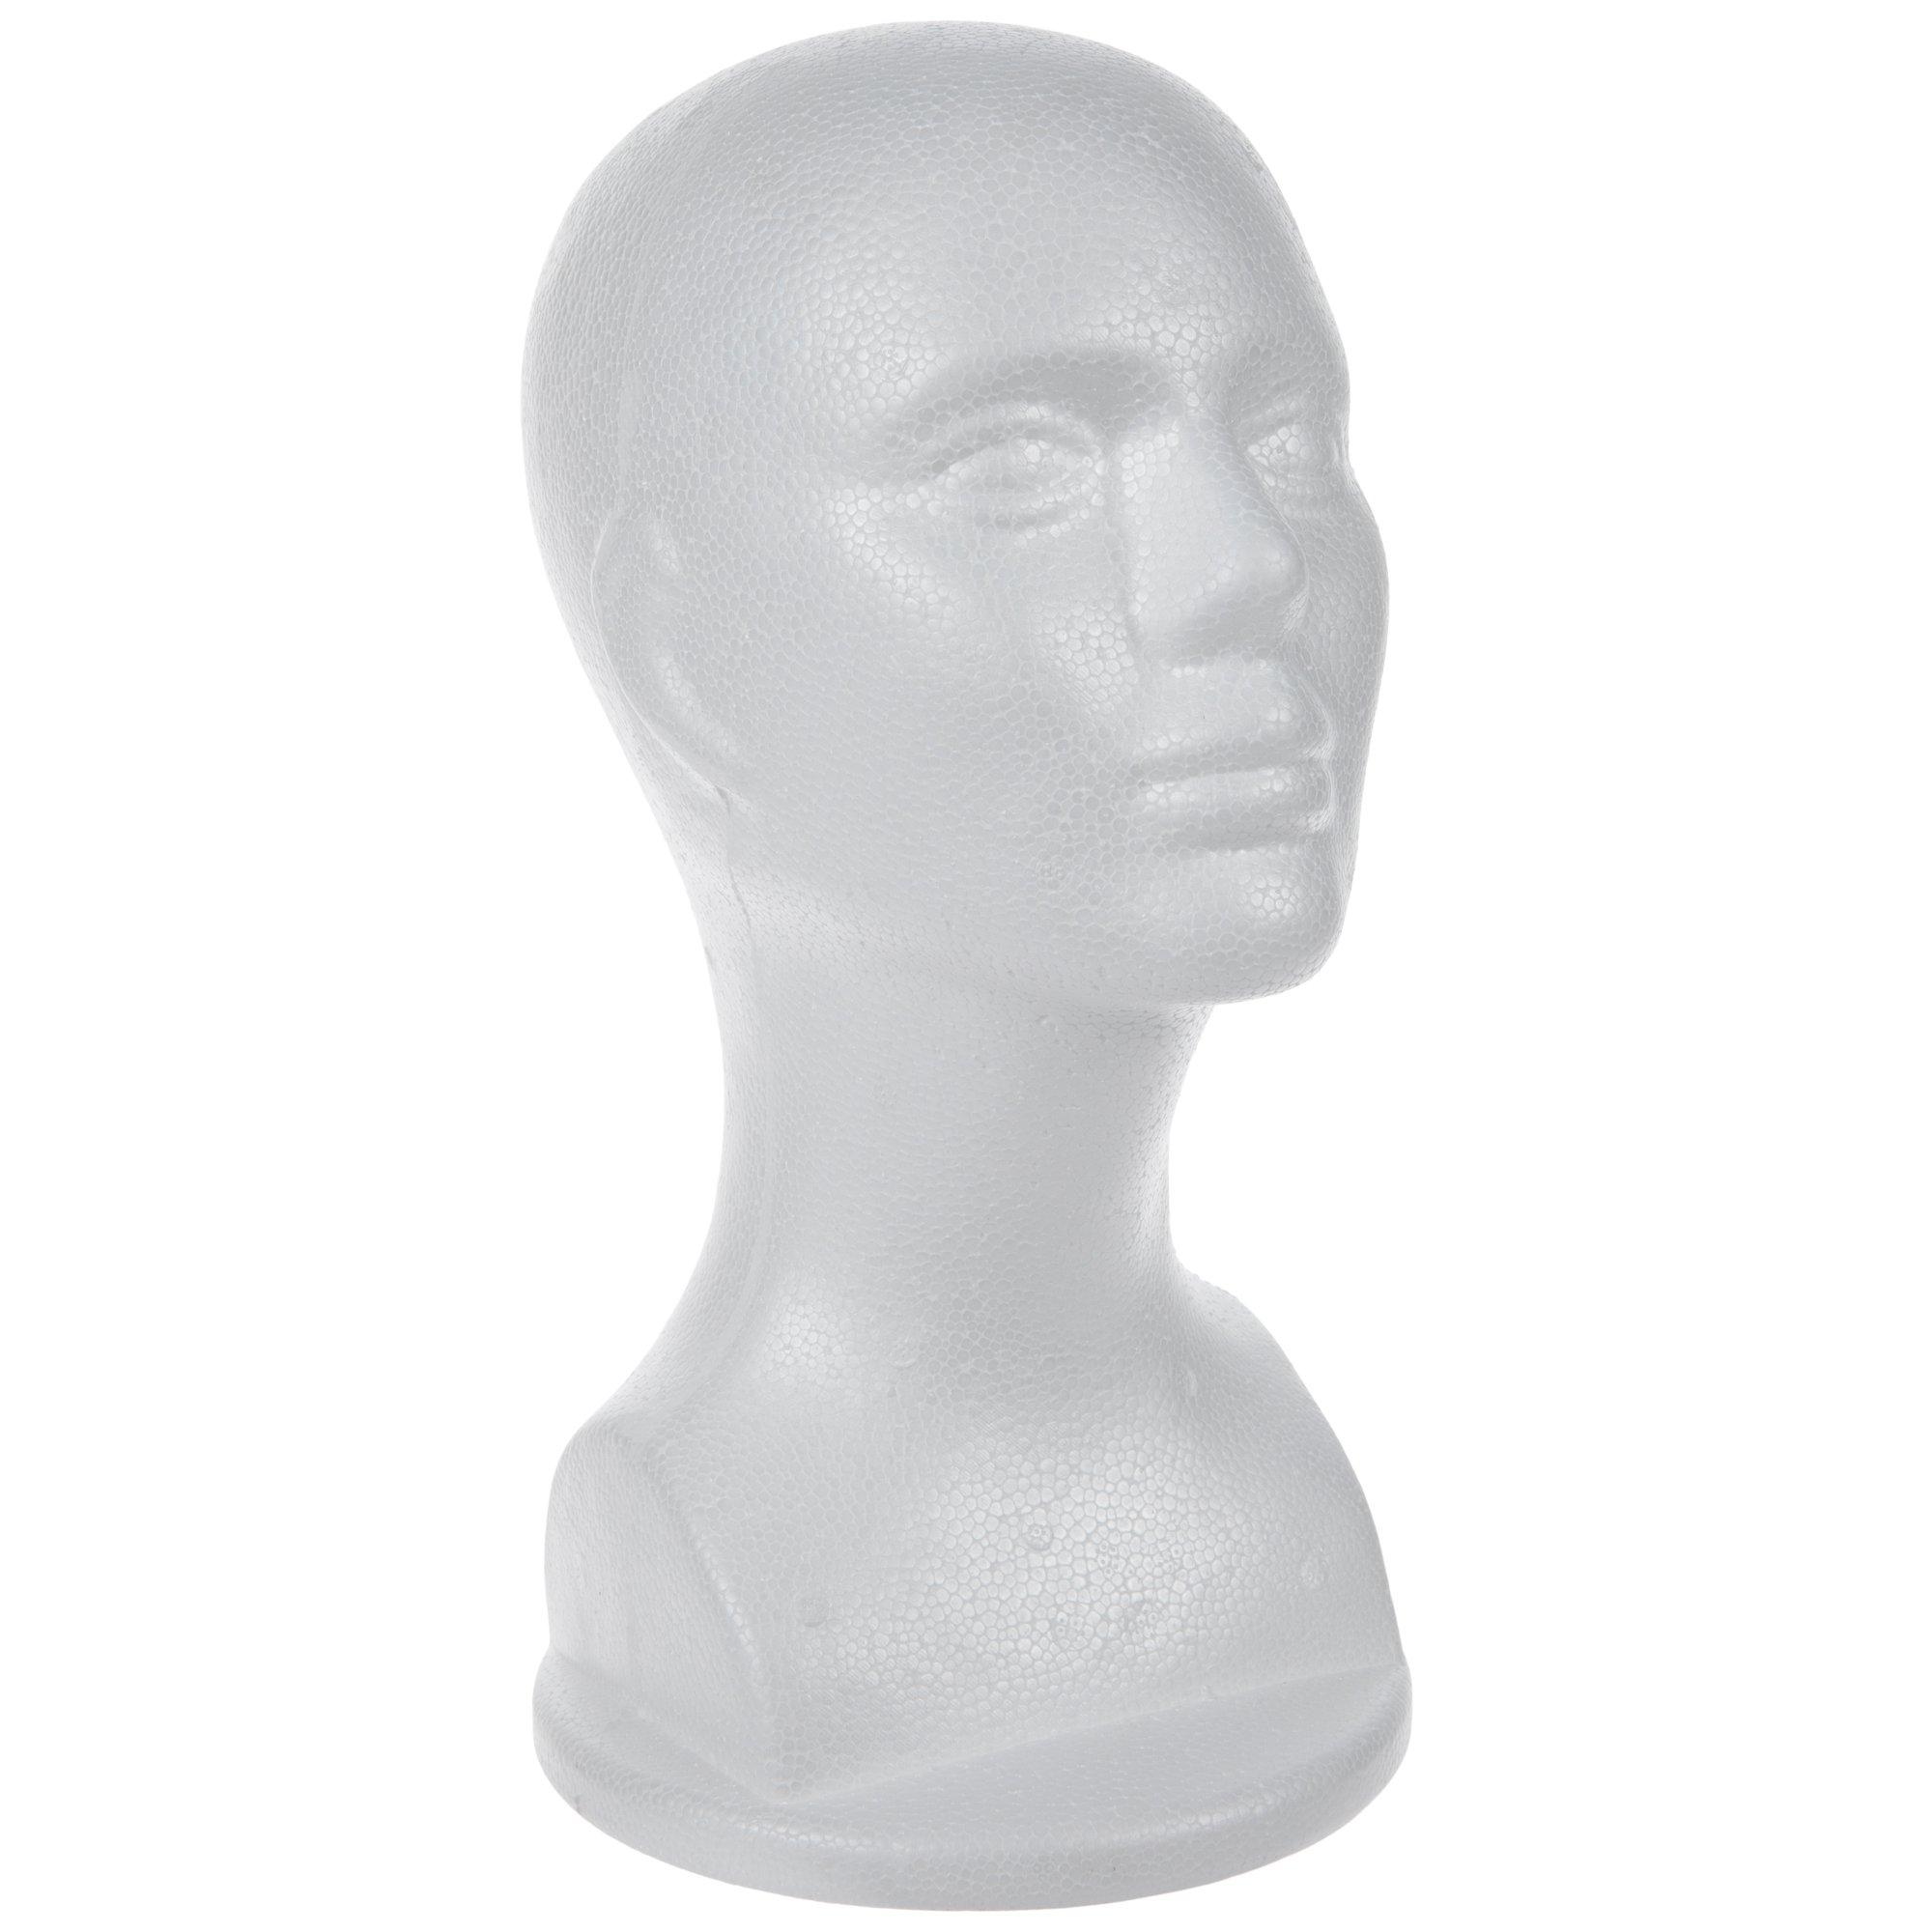  porfeet 11 Foam Wig Head, Female Model Head Durable